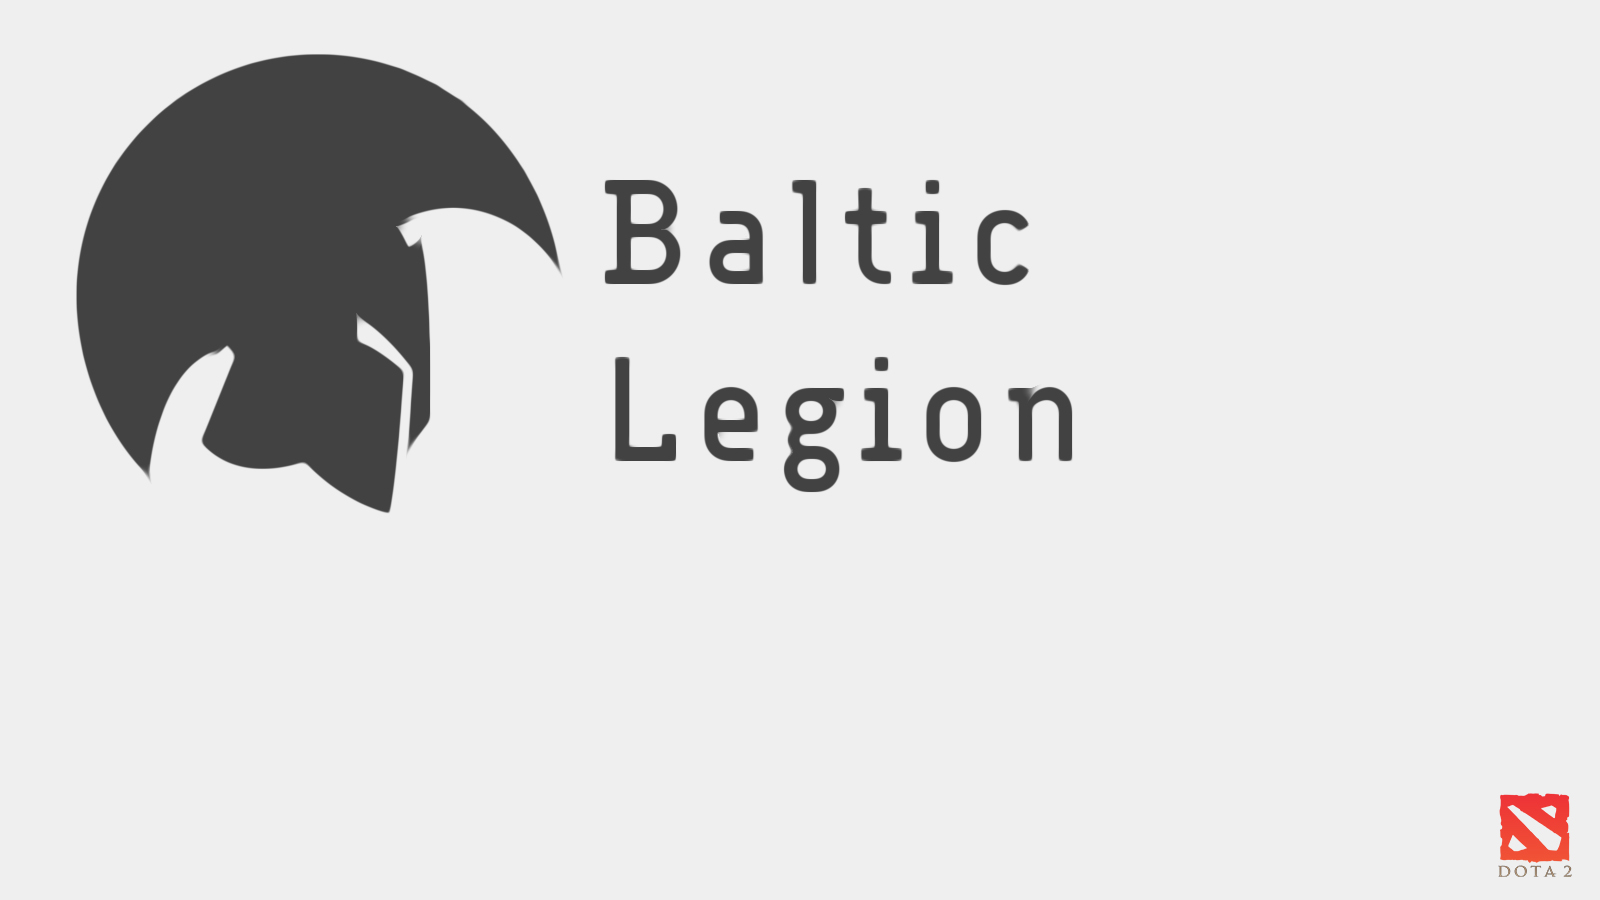 Baltic Legion